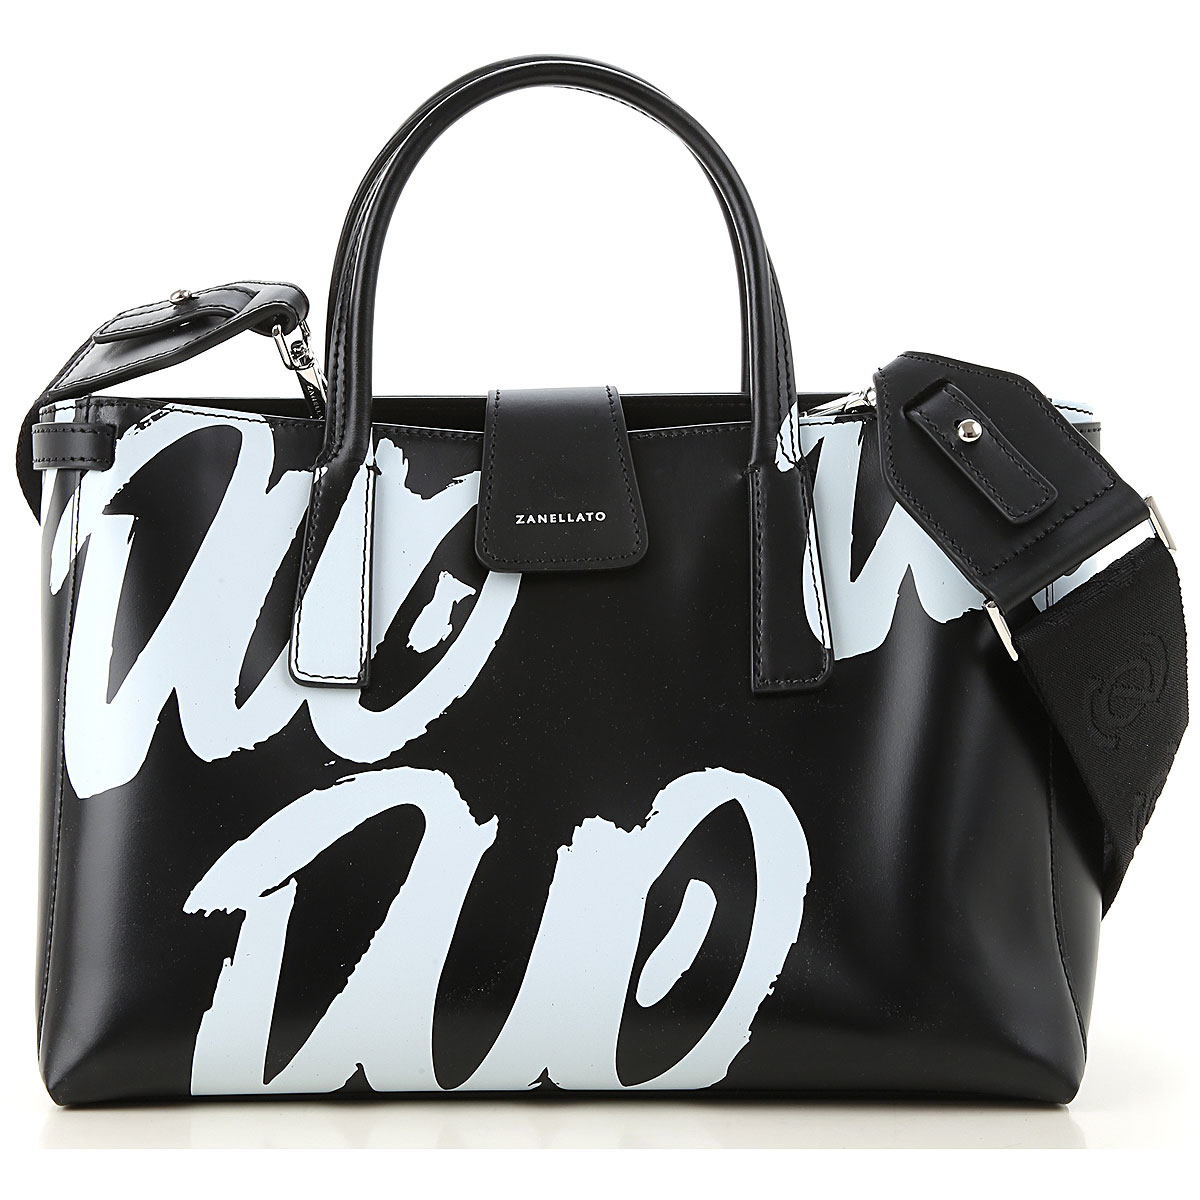 Handbags Zanellato, Style code: 6400-dd-02